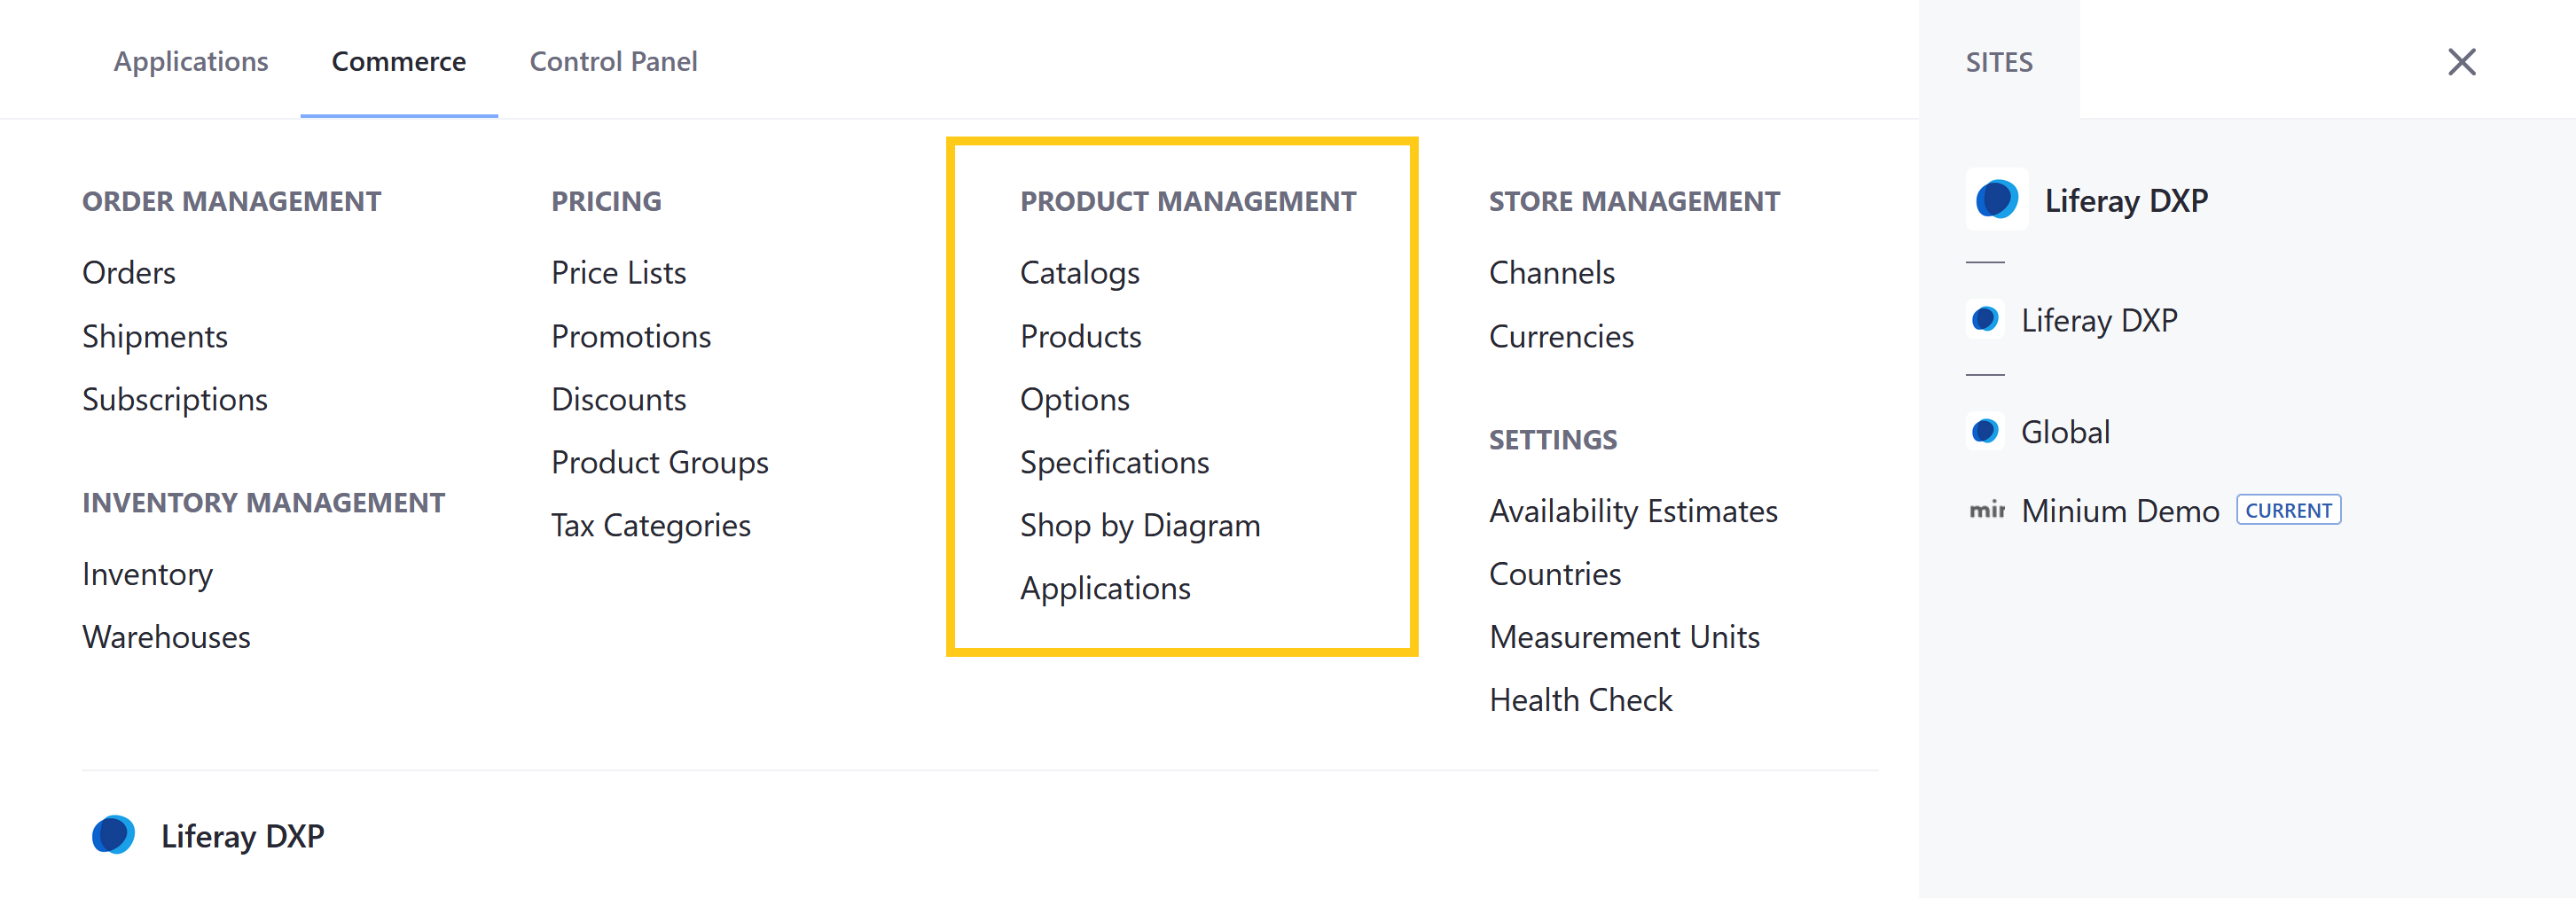 商品管理アプリケーションやリソースへのアクセスを制御します。